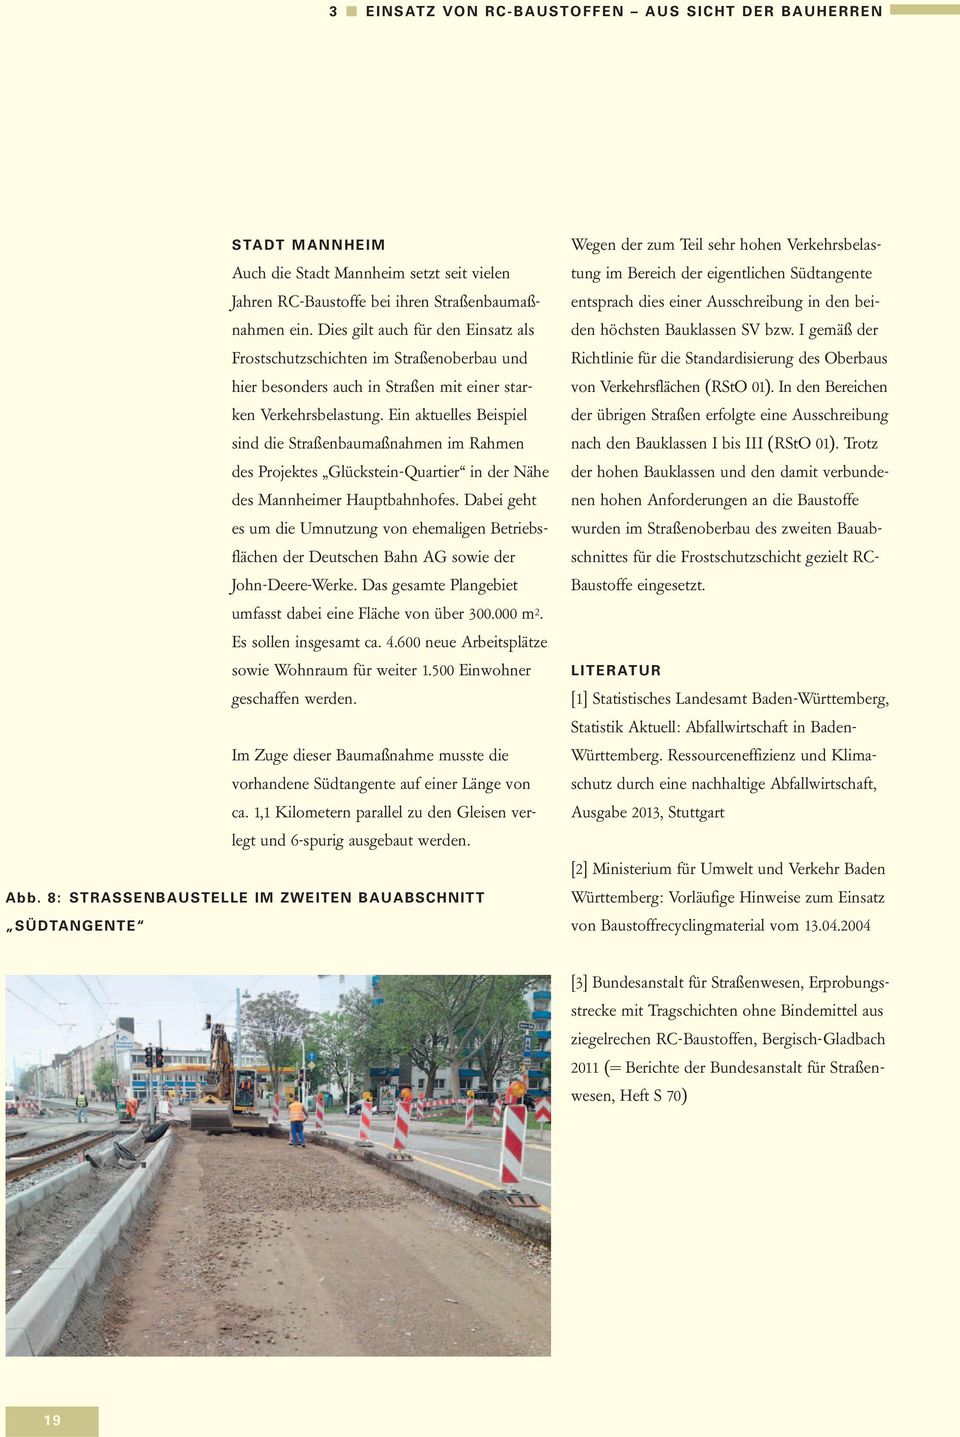 Ein aktuelles Beispiel sind die Straßenbaumaßnahmen im Rahmen des Projektes Glückstein-Quartier in der Nähe des Mannheimer Hauptbahnhofes.